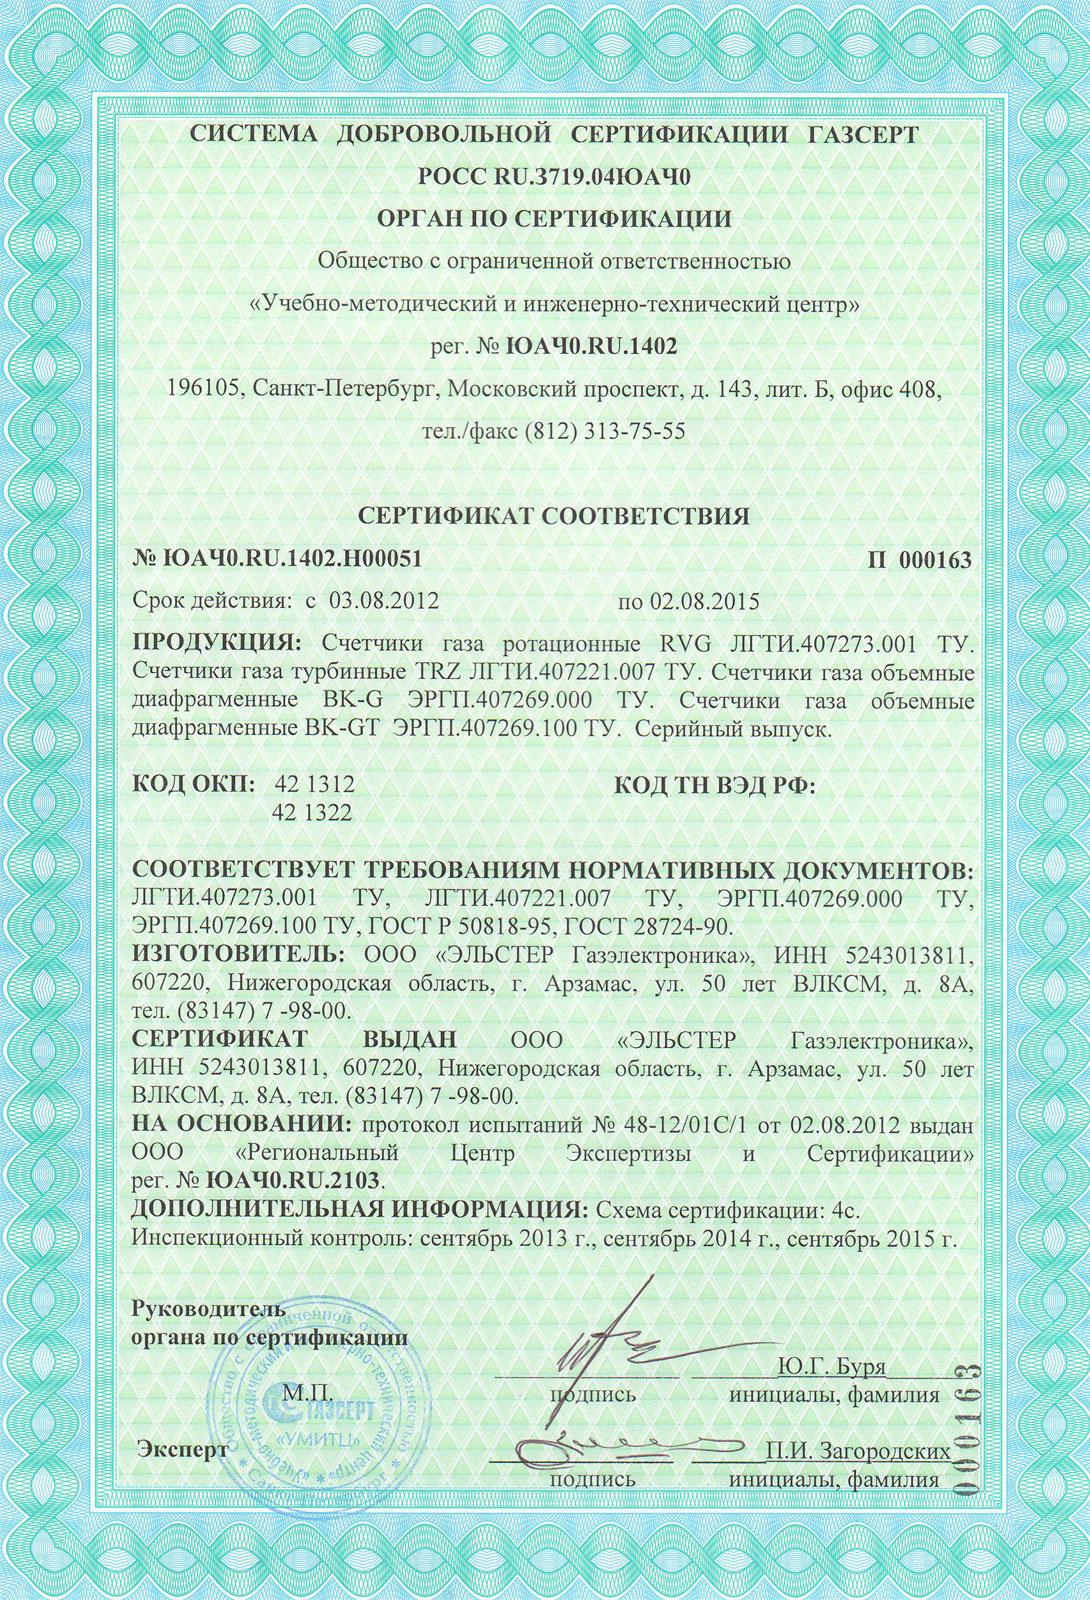 Сертификат соответствия ВК-G4